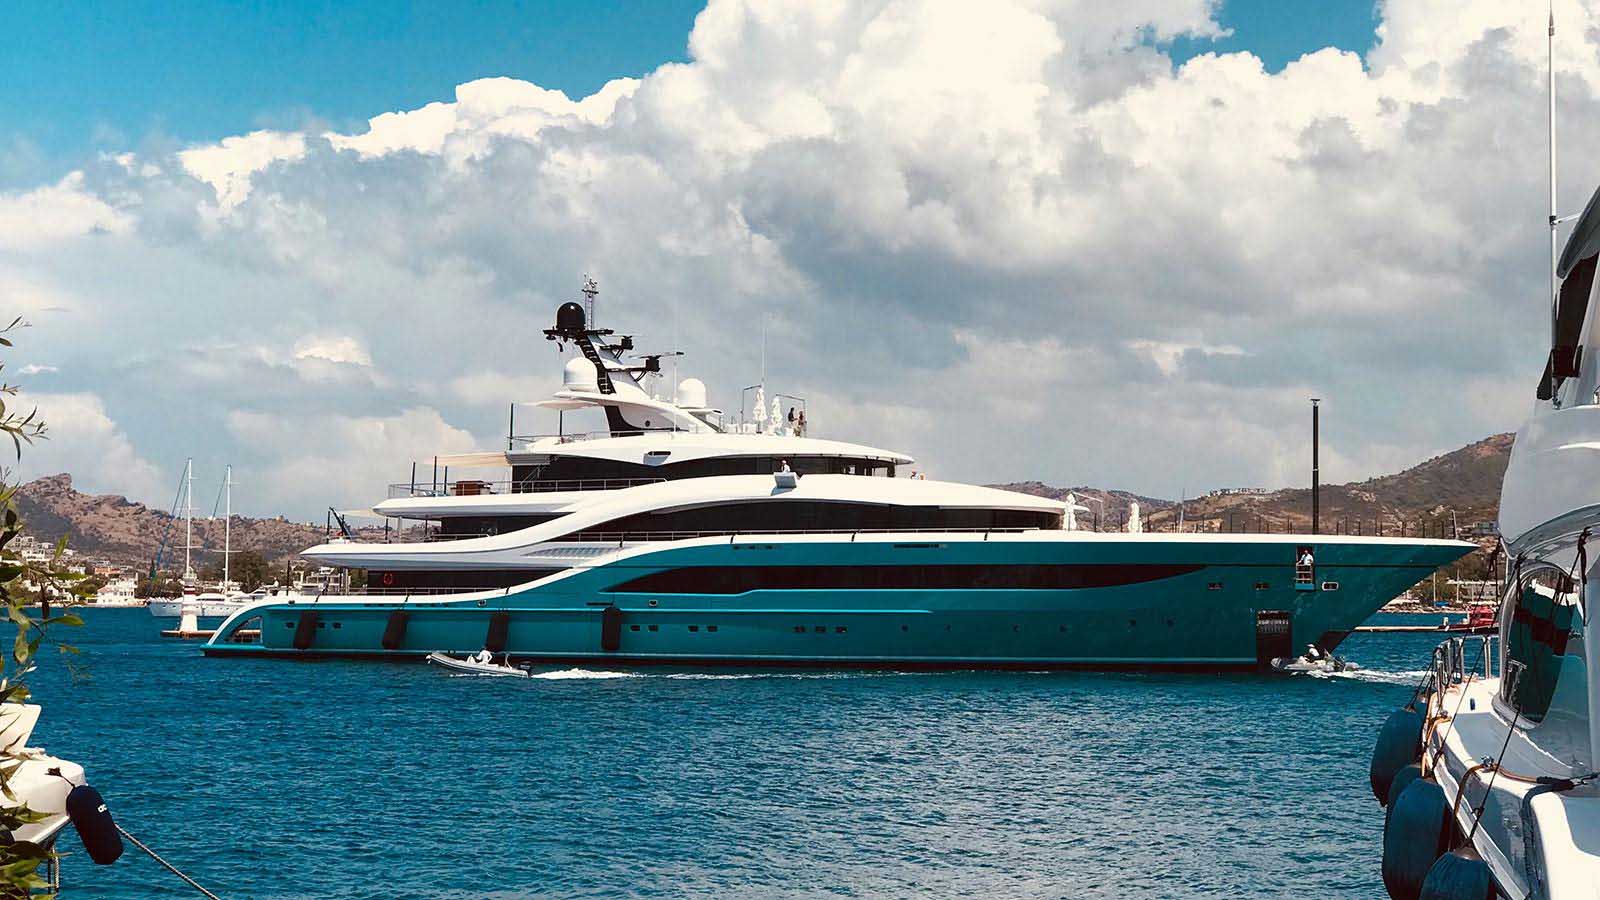 Turquoise Yachts entrega superiate GO-boatshopping